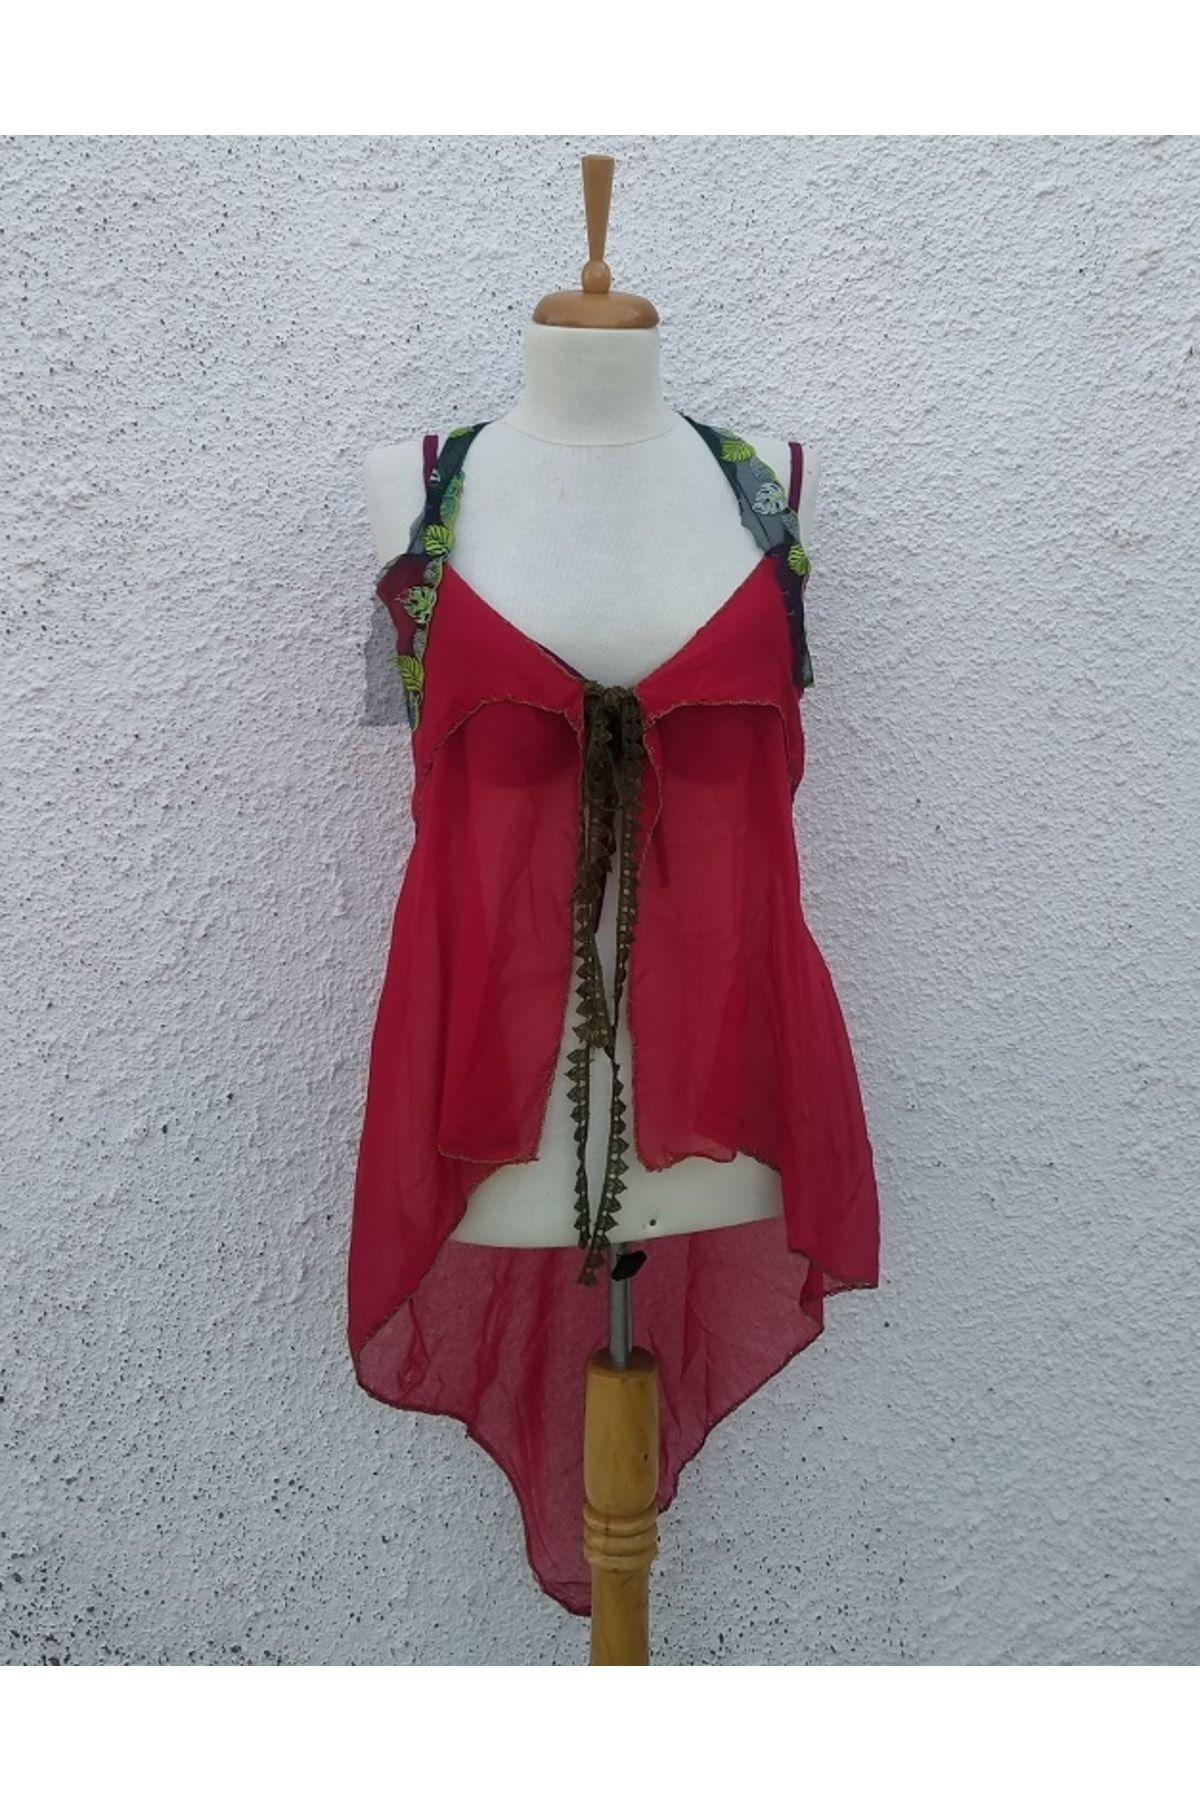 Hippybutik Kırmızı Tığ Kontürlü Elişi Yemeni Pareo Elbise Yelek Plaj Giyim